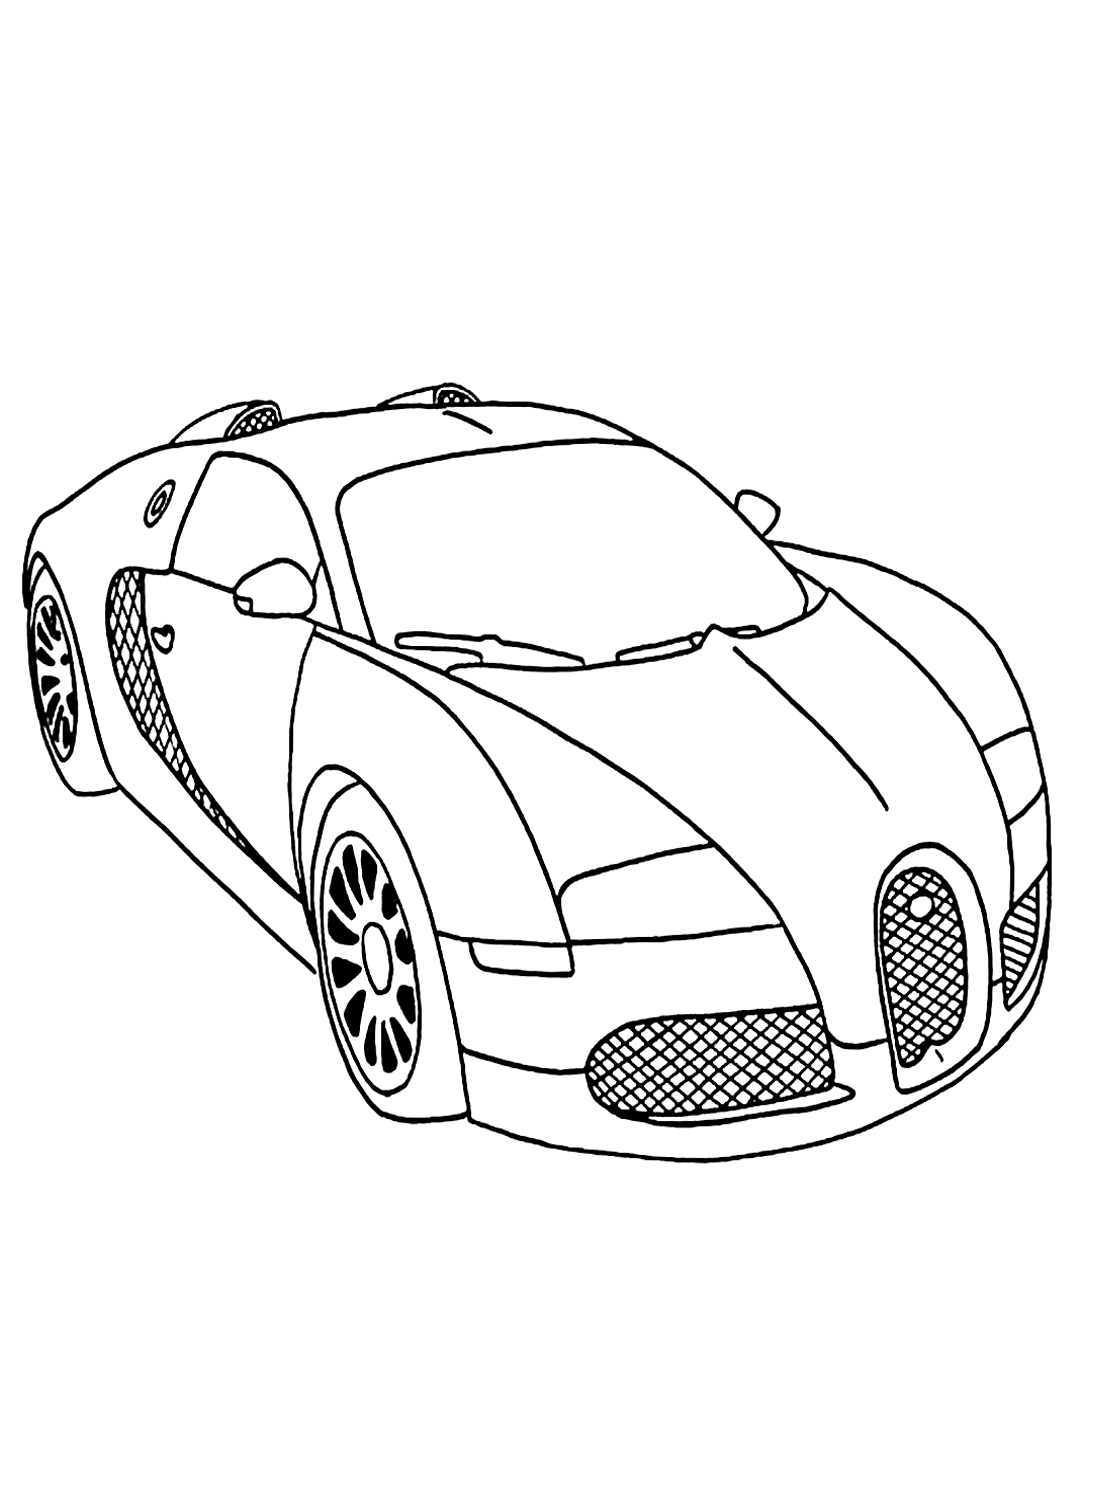 Цветное изображение гоночного автомобиля из гоночного автомобиля